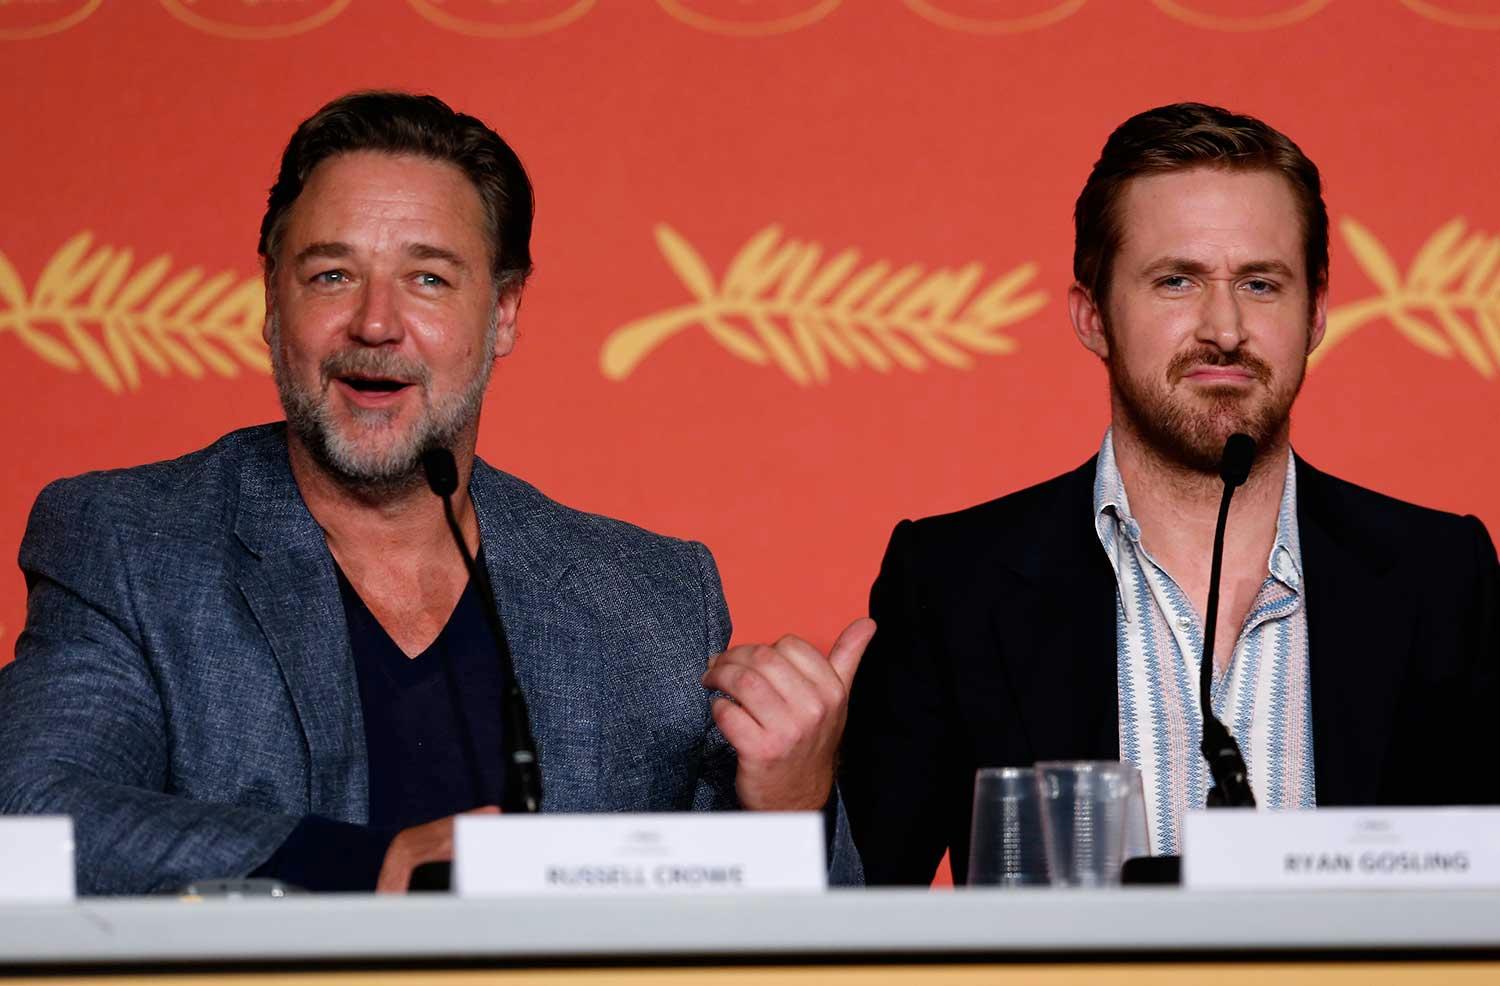 Den kemi som Russell Crowe och Ryan Gosling har framför kameran finns inte bakom.